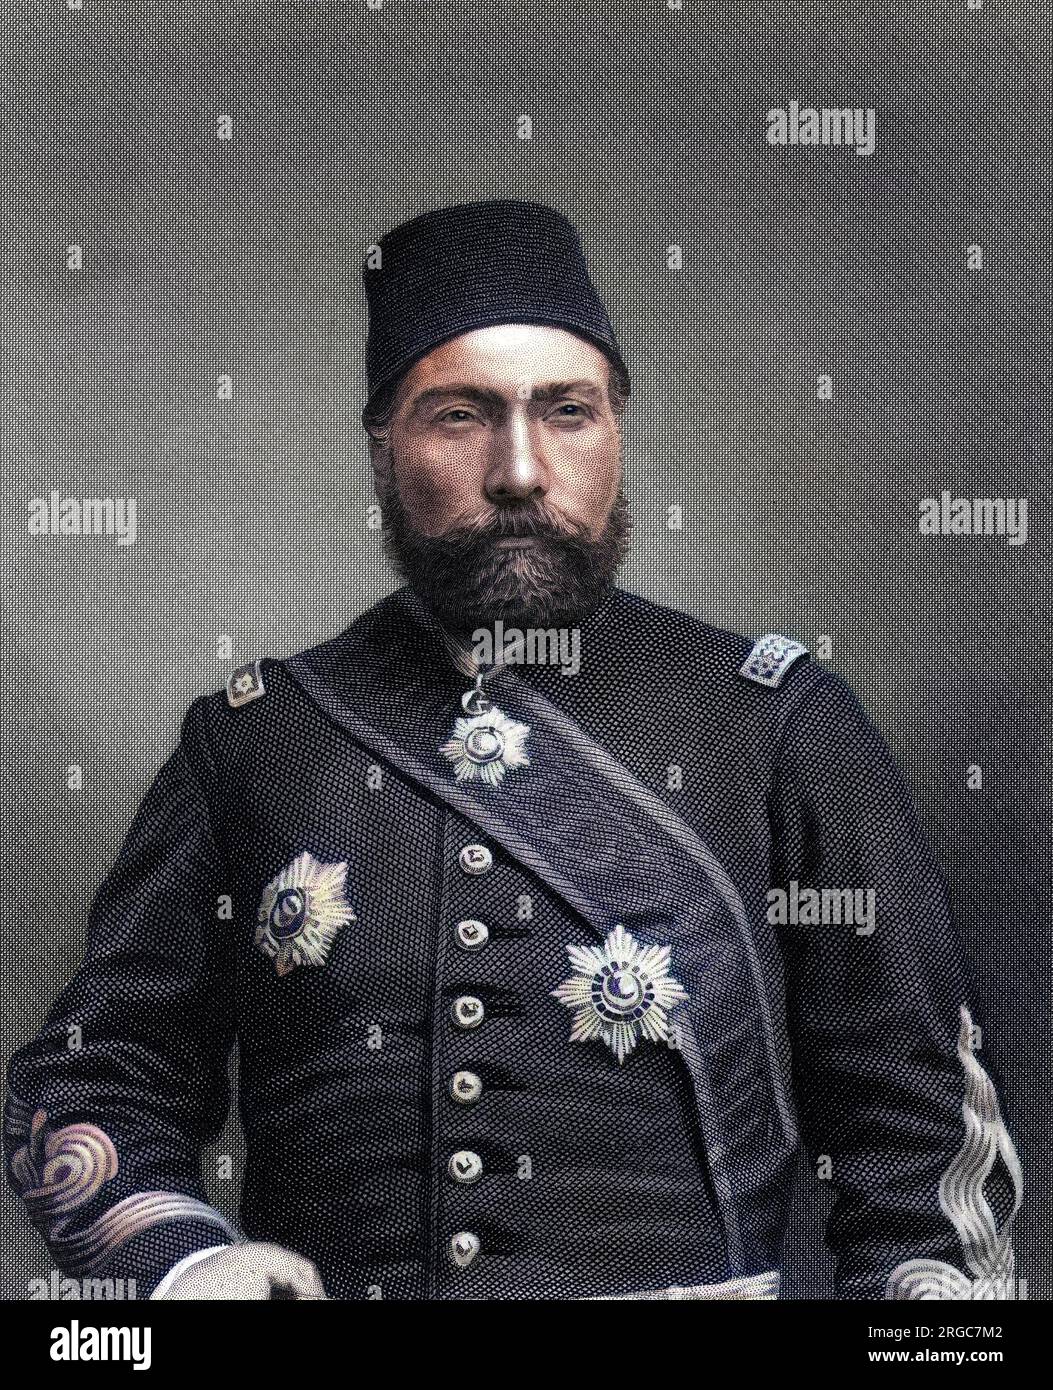 OSMAN NURI PASHA (1837-1900), türkischer Soldat und Staatsmann, Verteidiger von Plevna 1877. Stockfoto